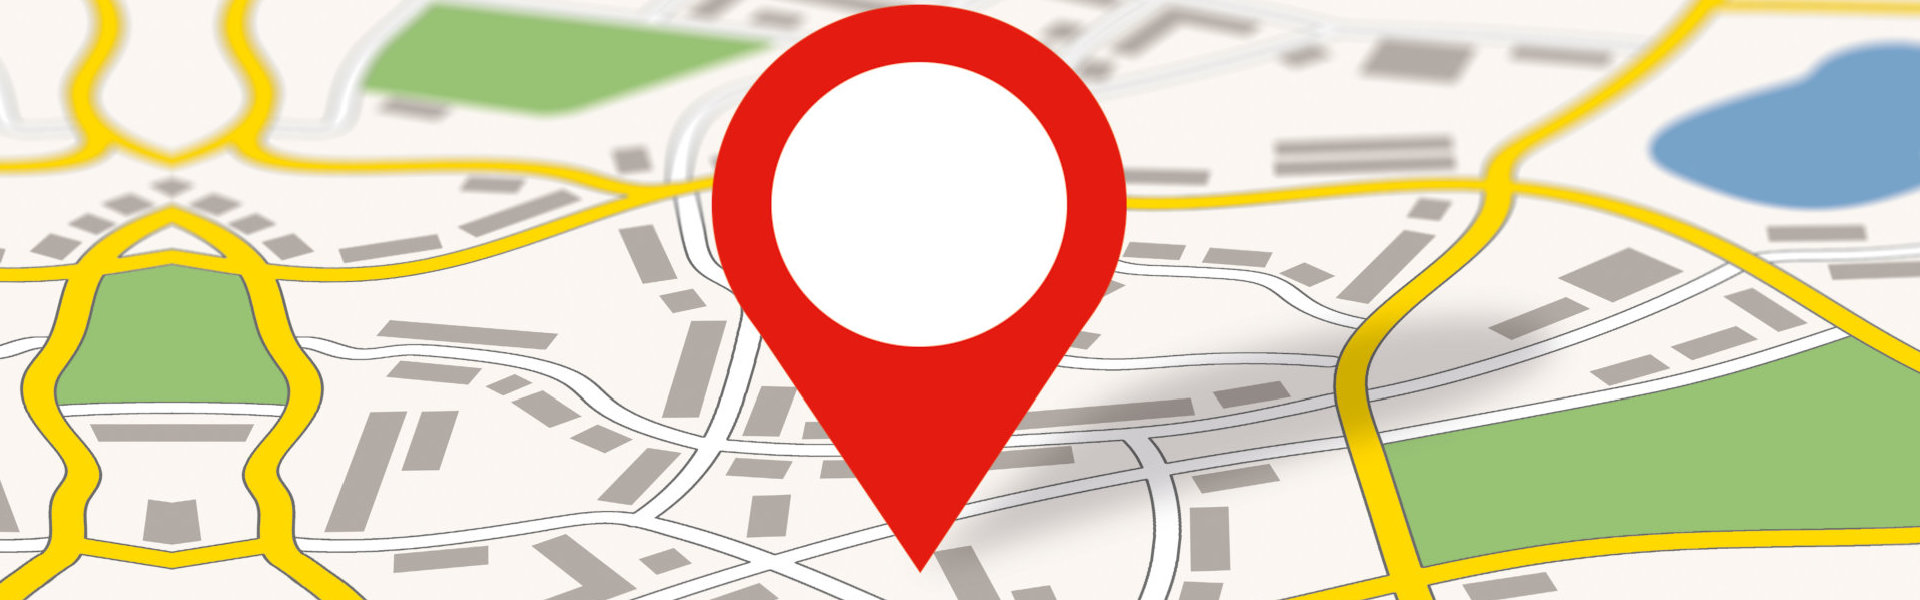 google map and pin